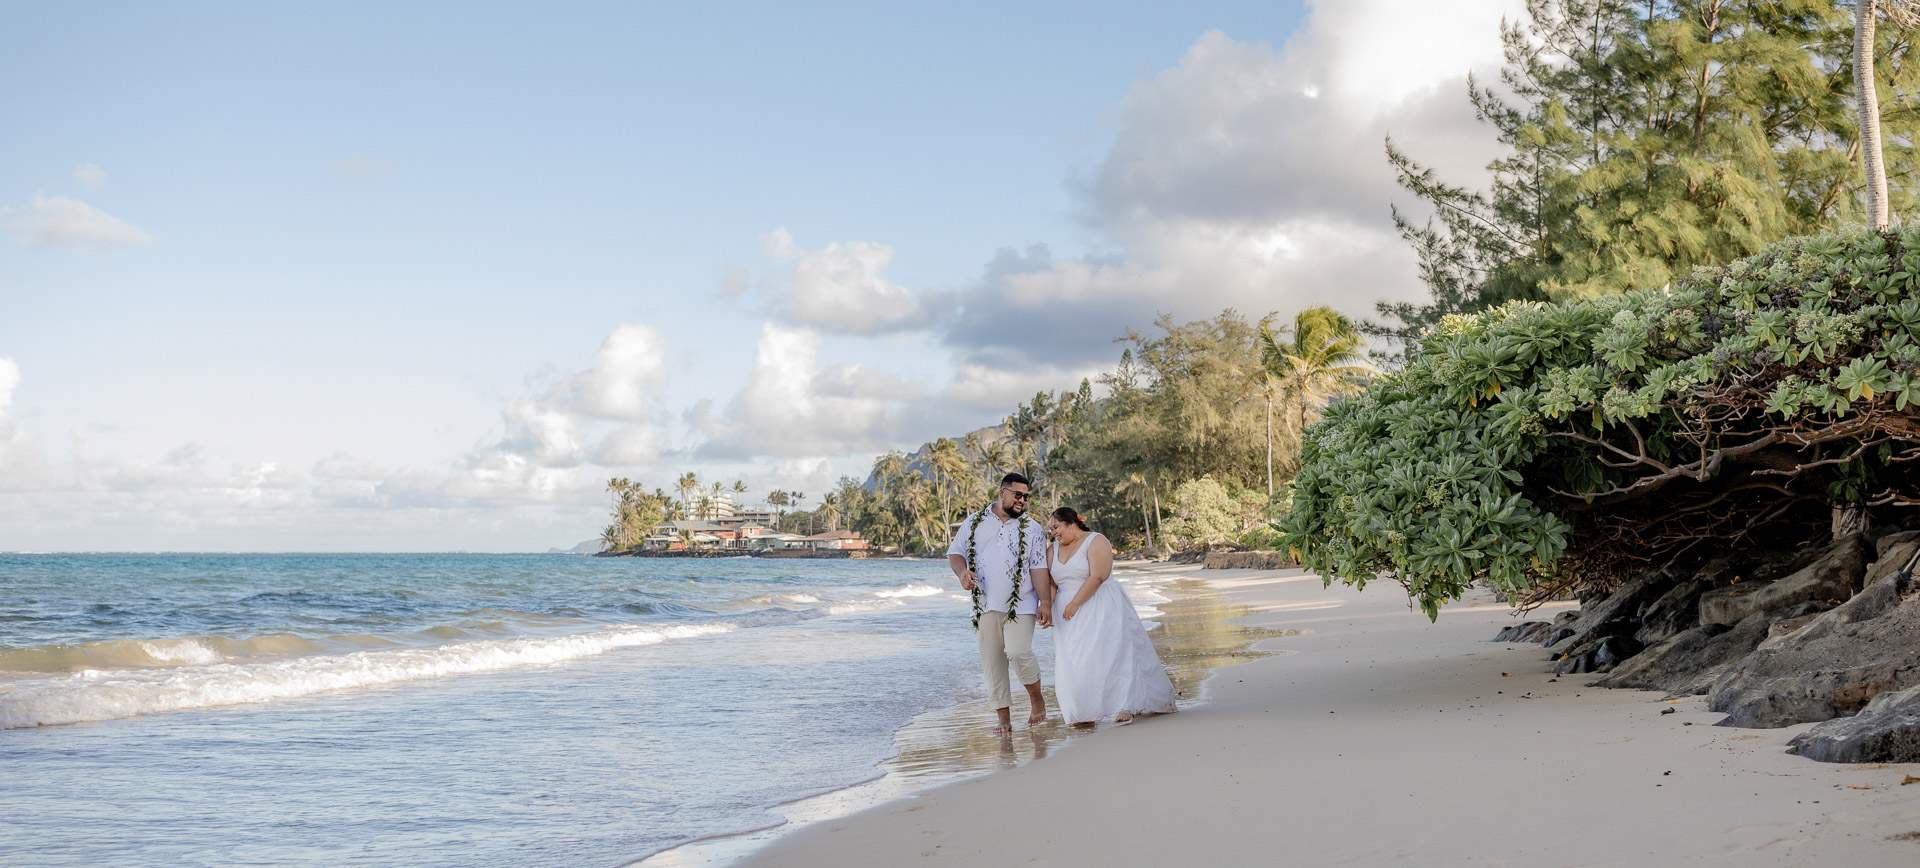 hawaii beach elopement package in oahu